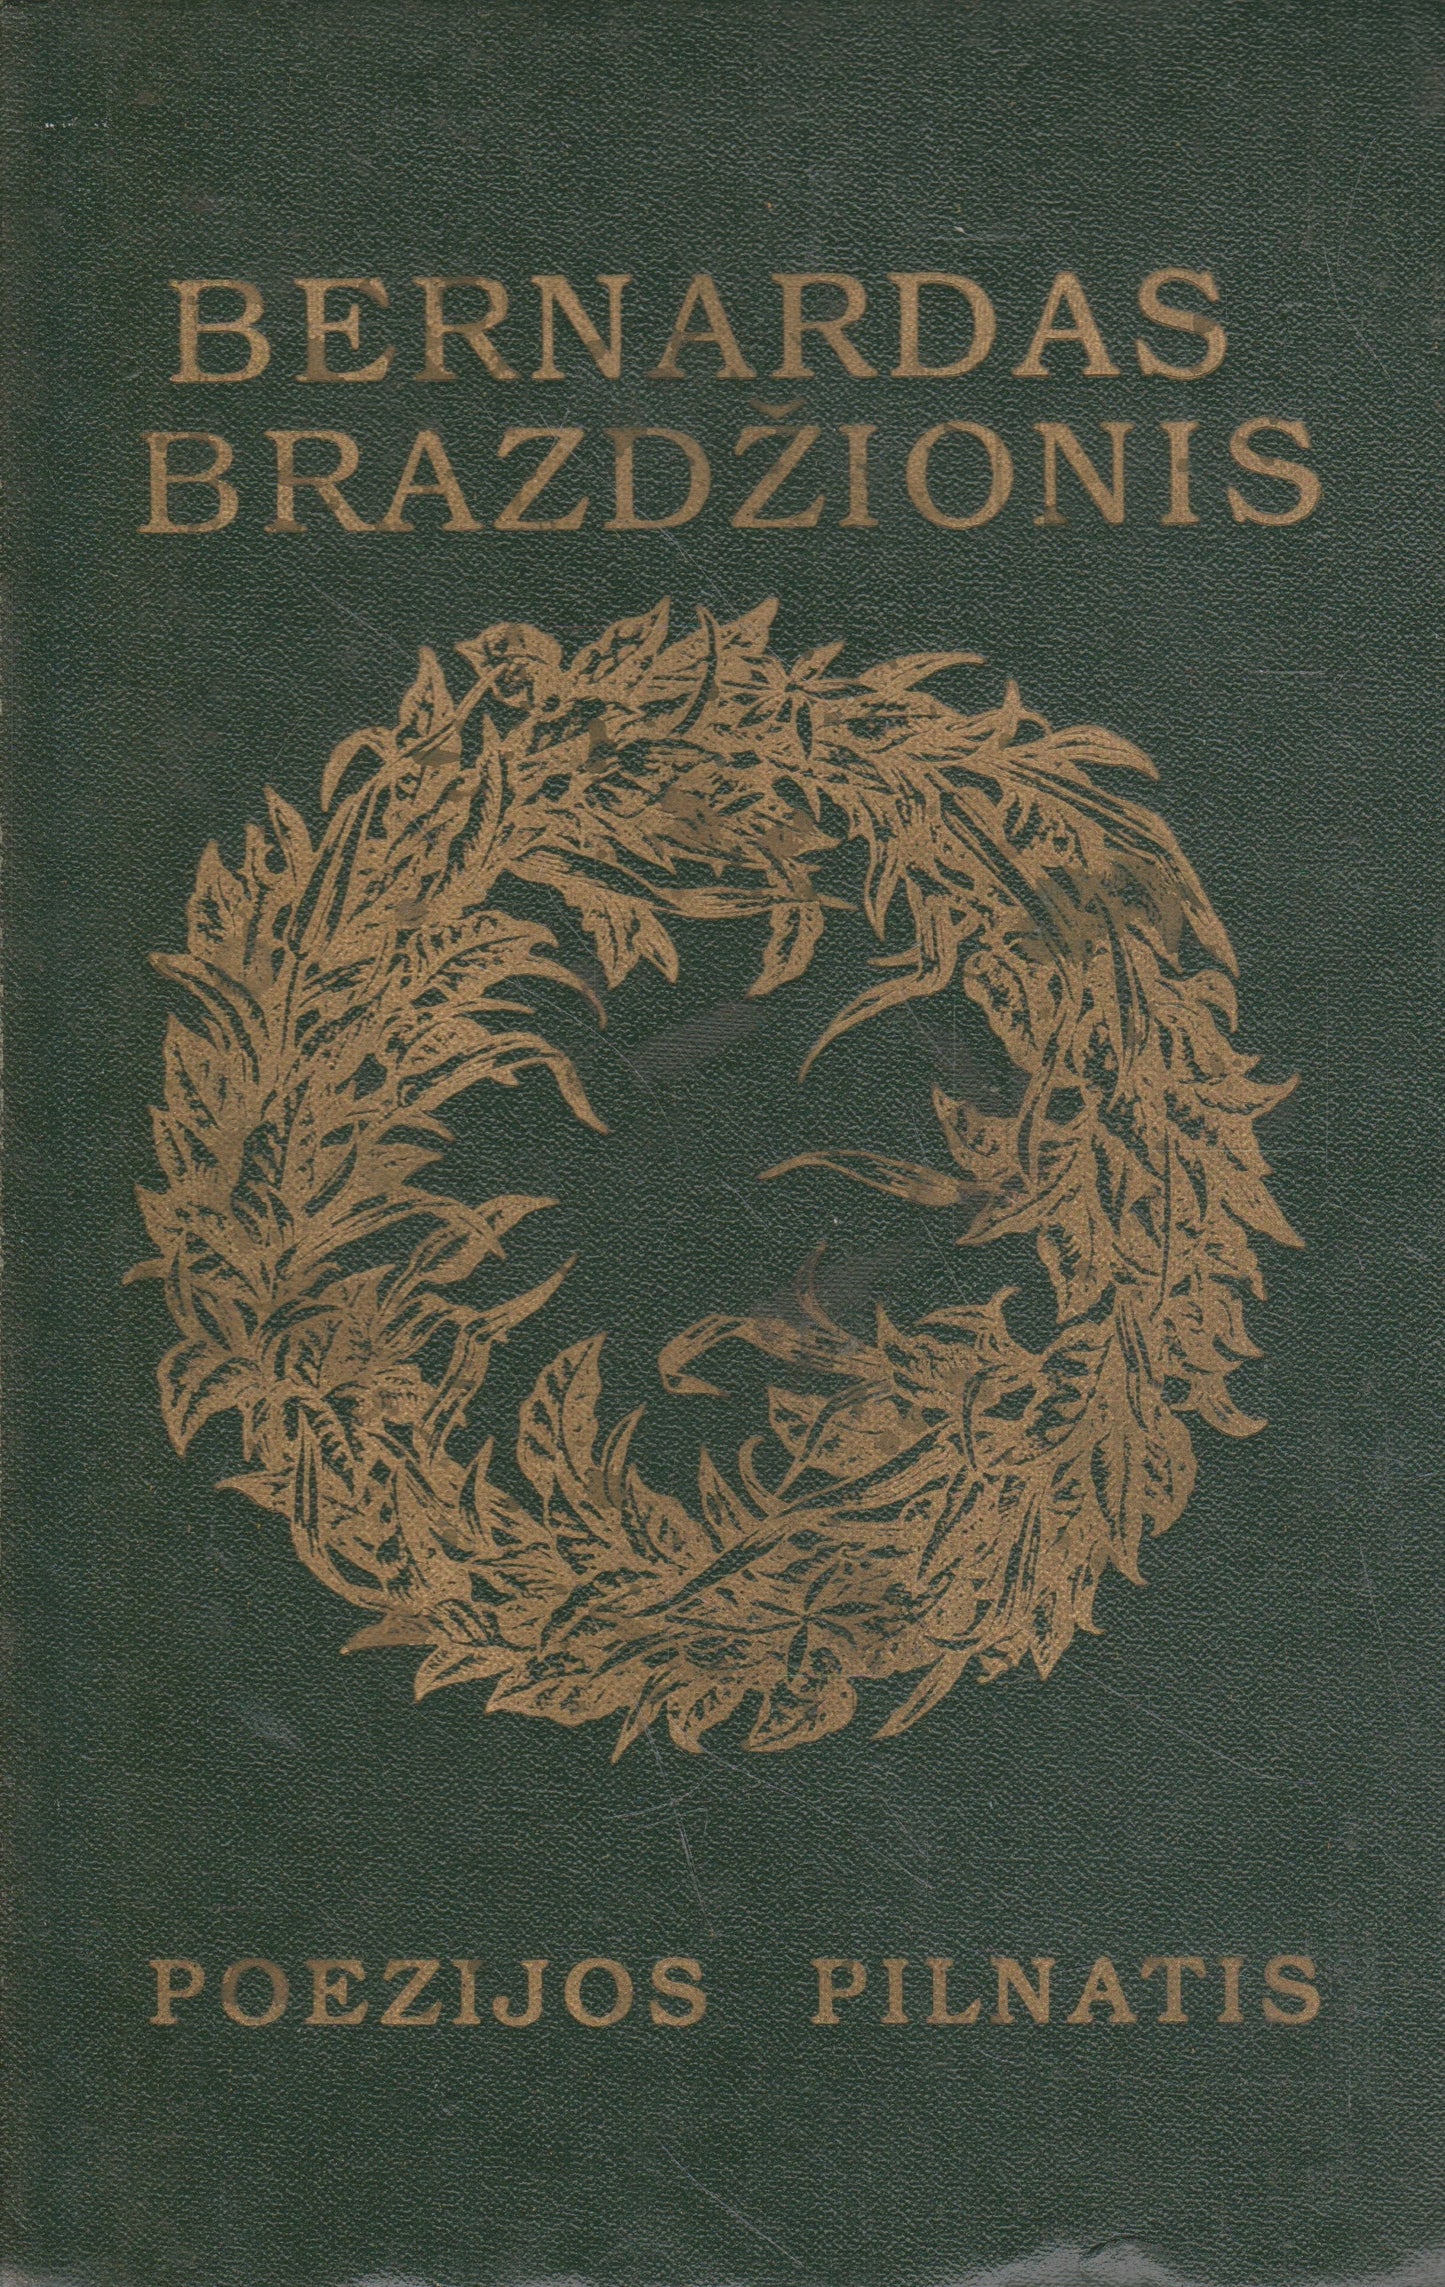 B. Brazdžionis - Poezijos pilnatis